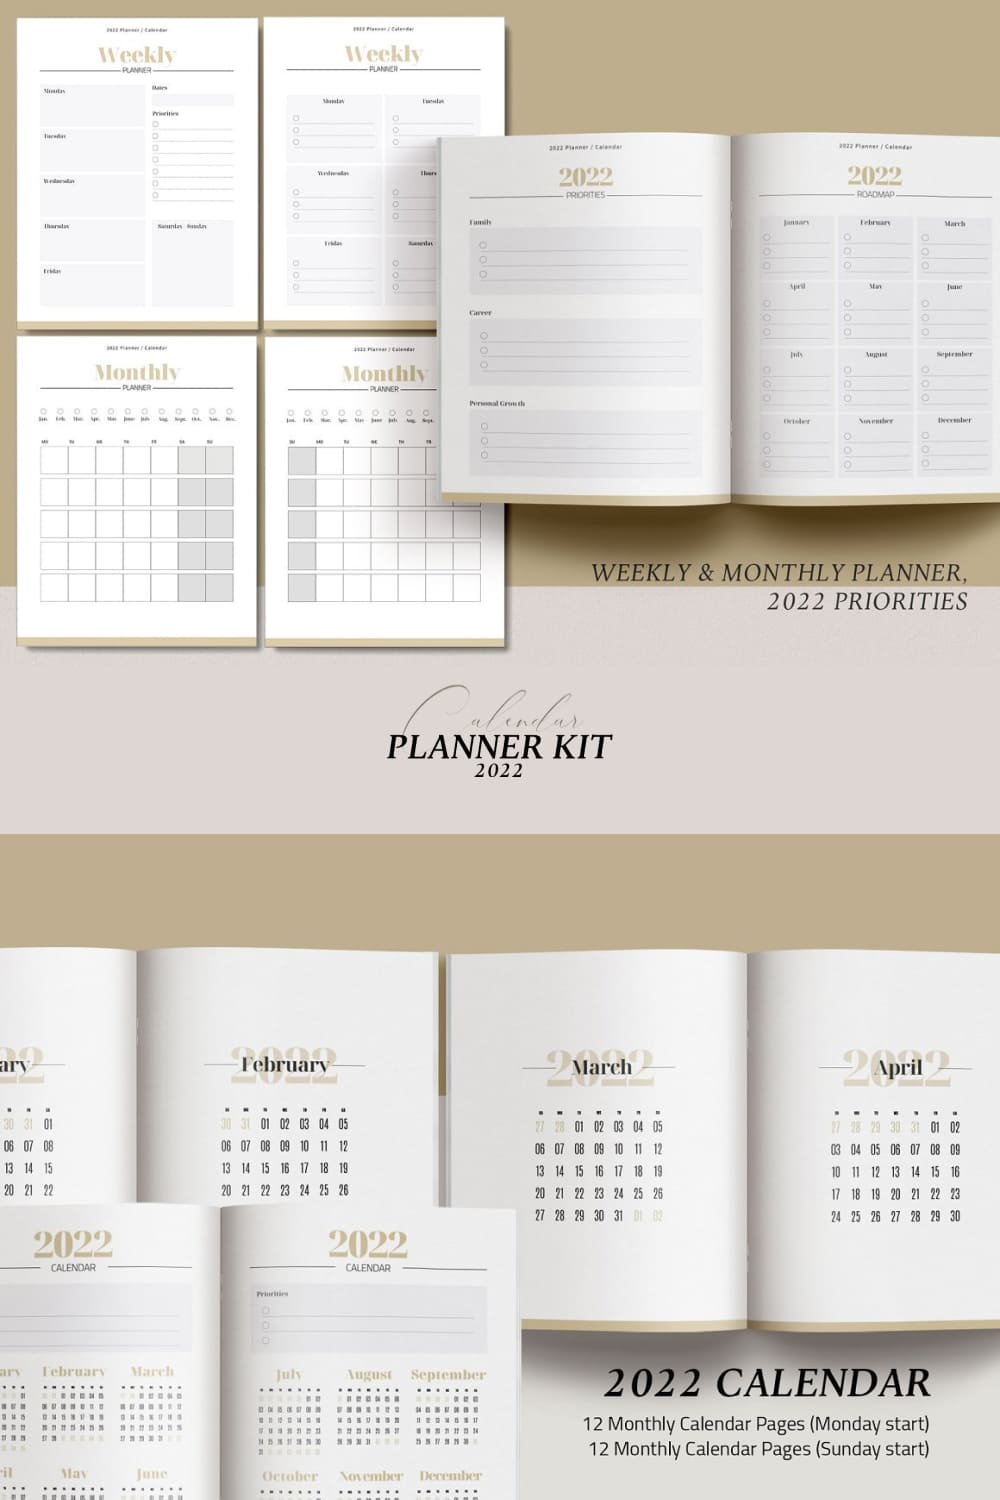 canva planner 2022 calendar kit pinterest images.